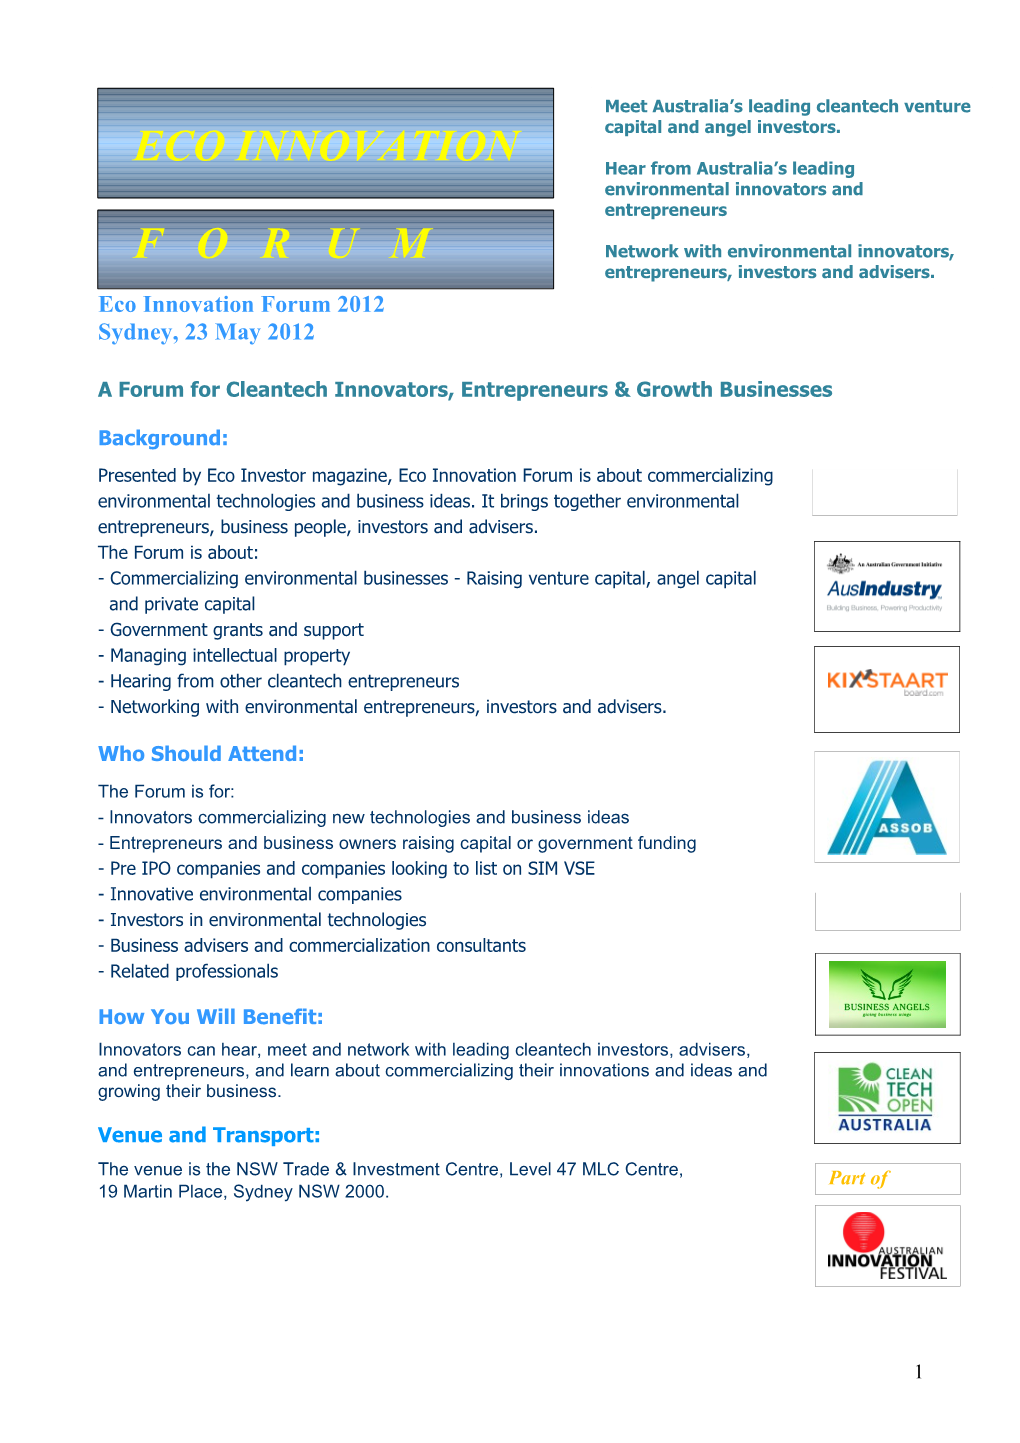 A Forum for Cleantech Innovators, Entrepreneursgrowth Businesses